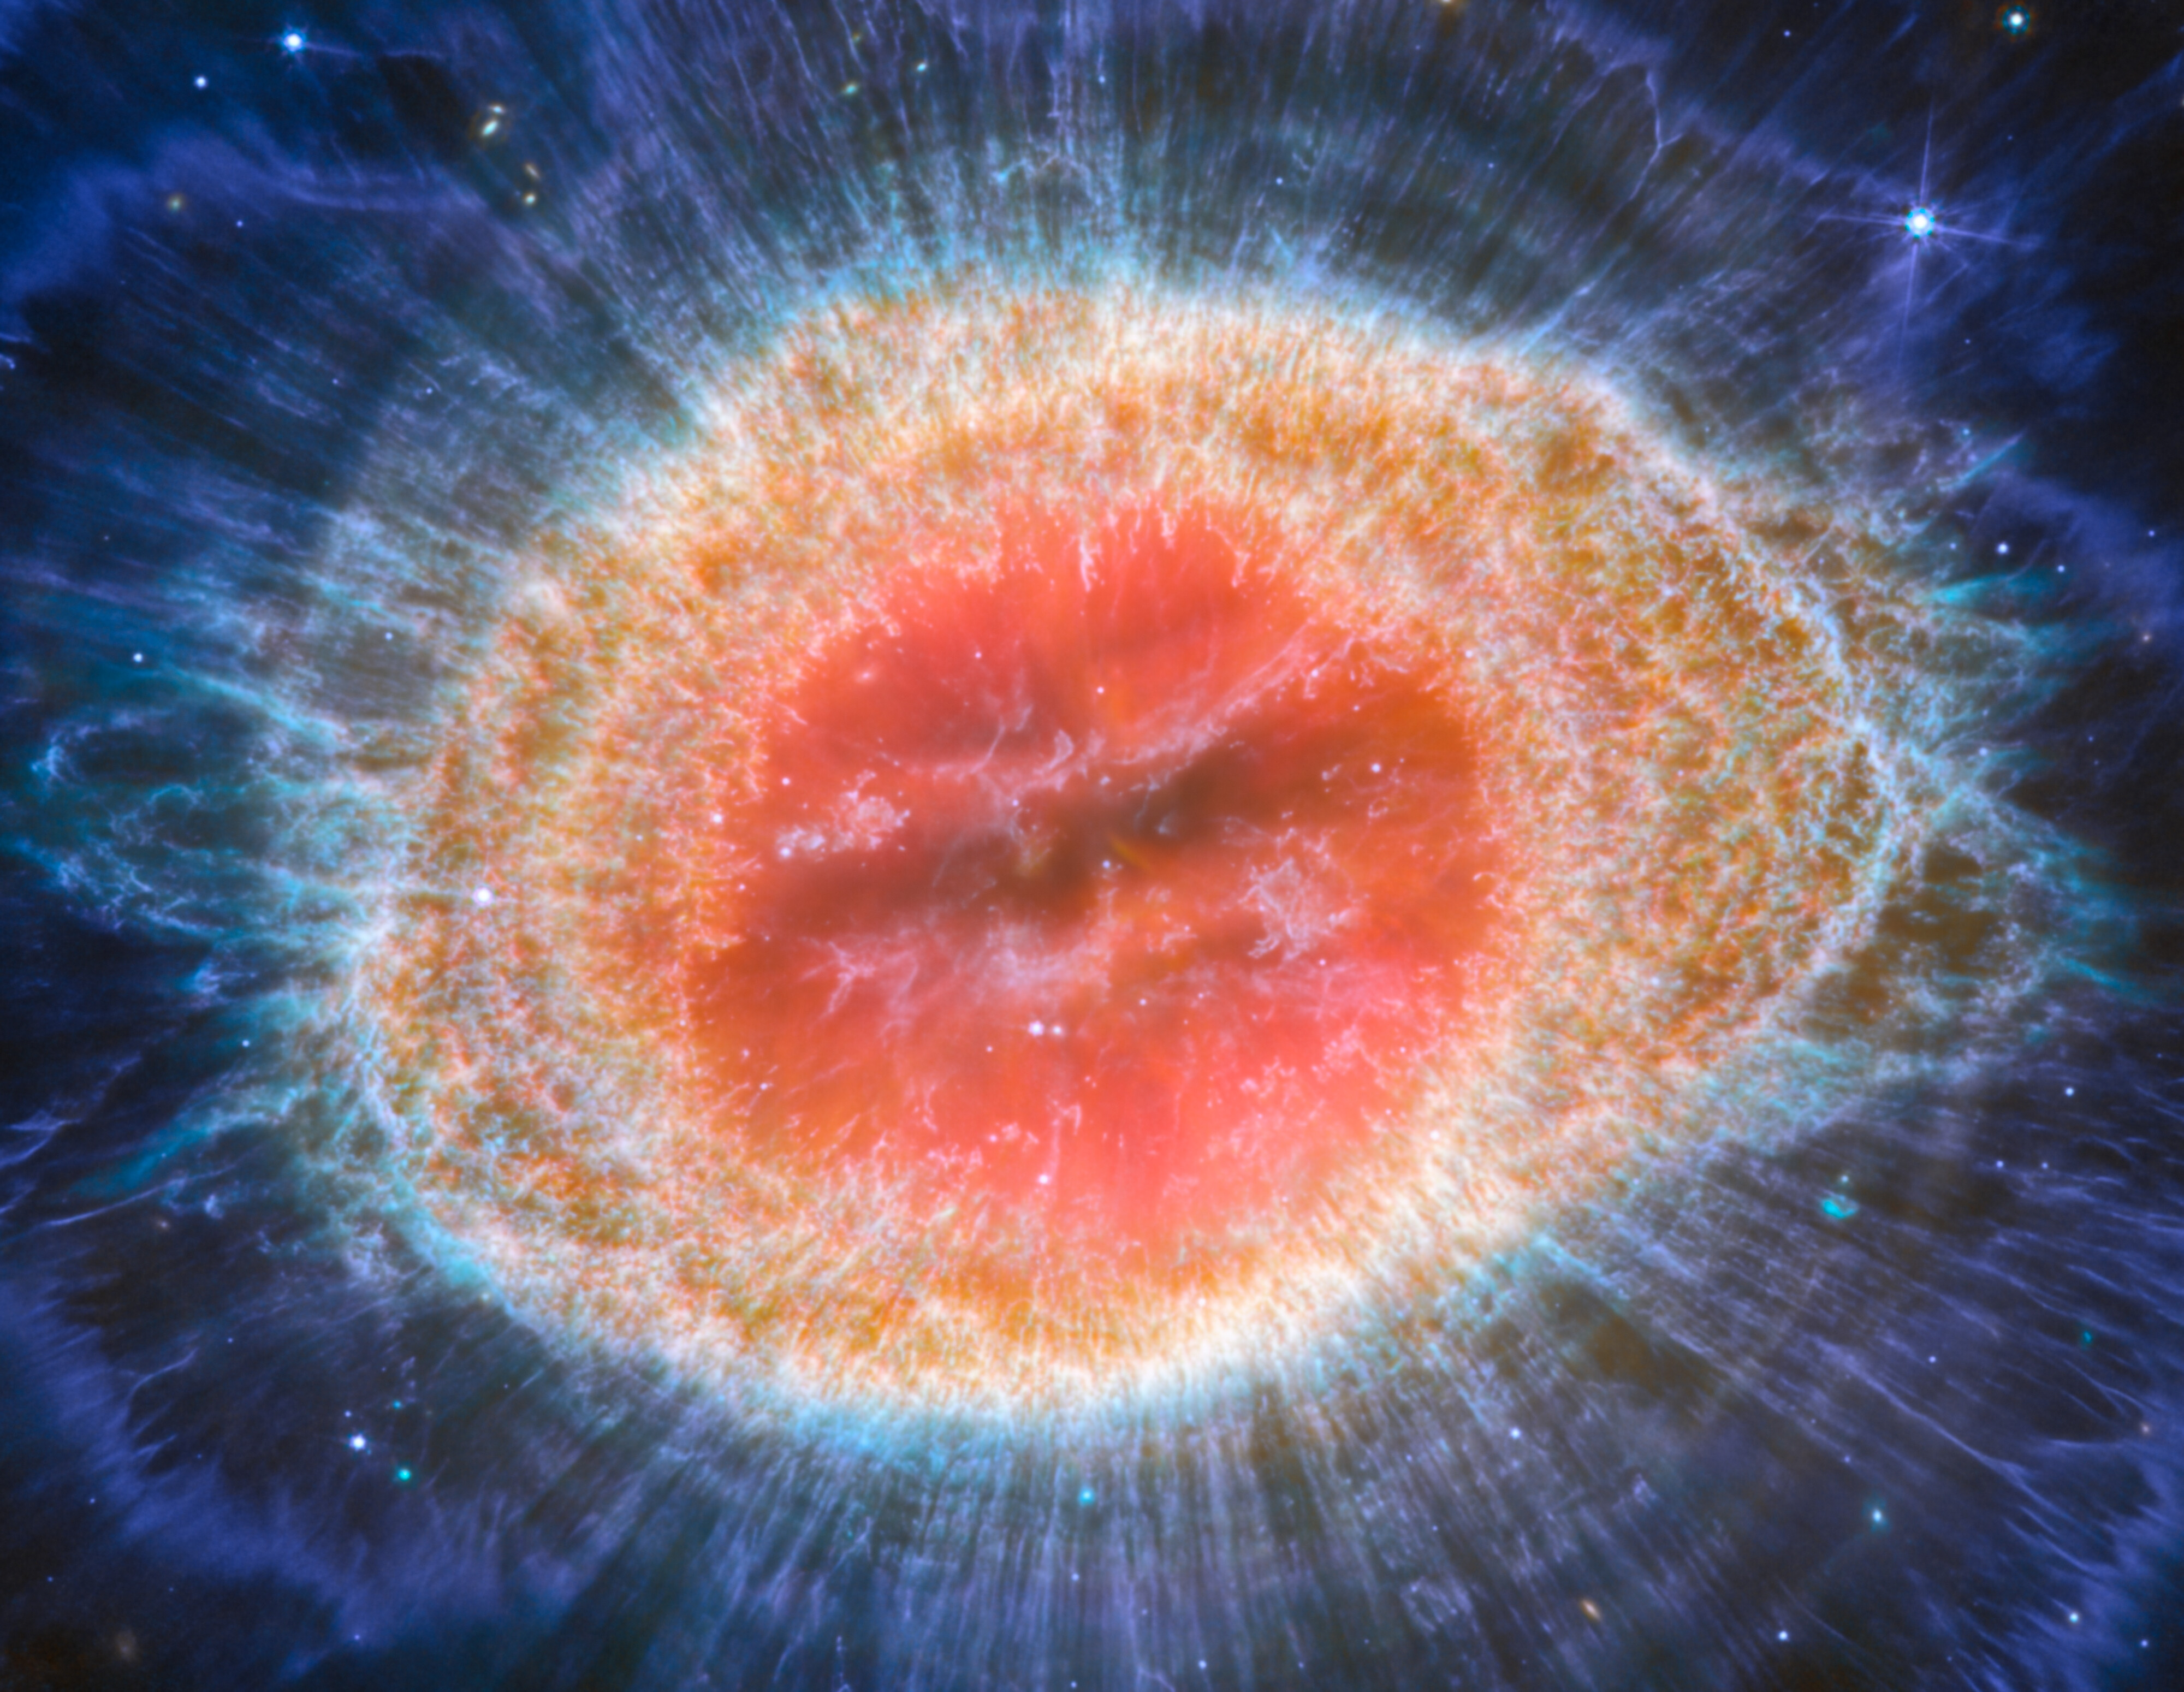 Ring Nebula image taken by MIRI.